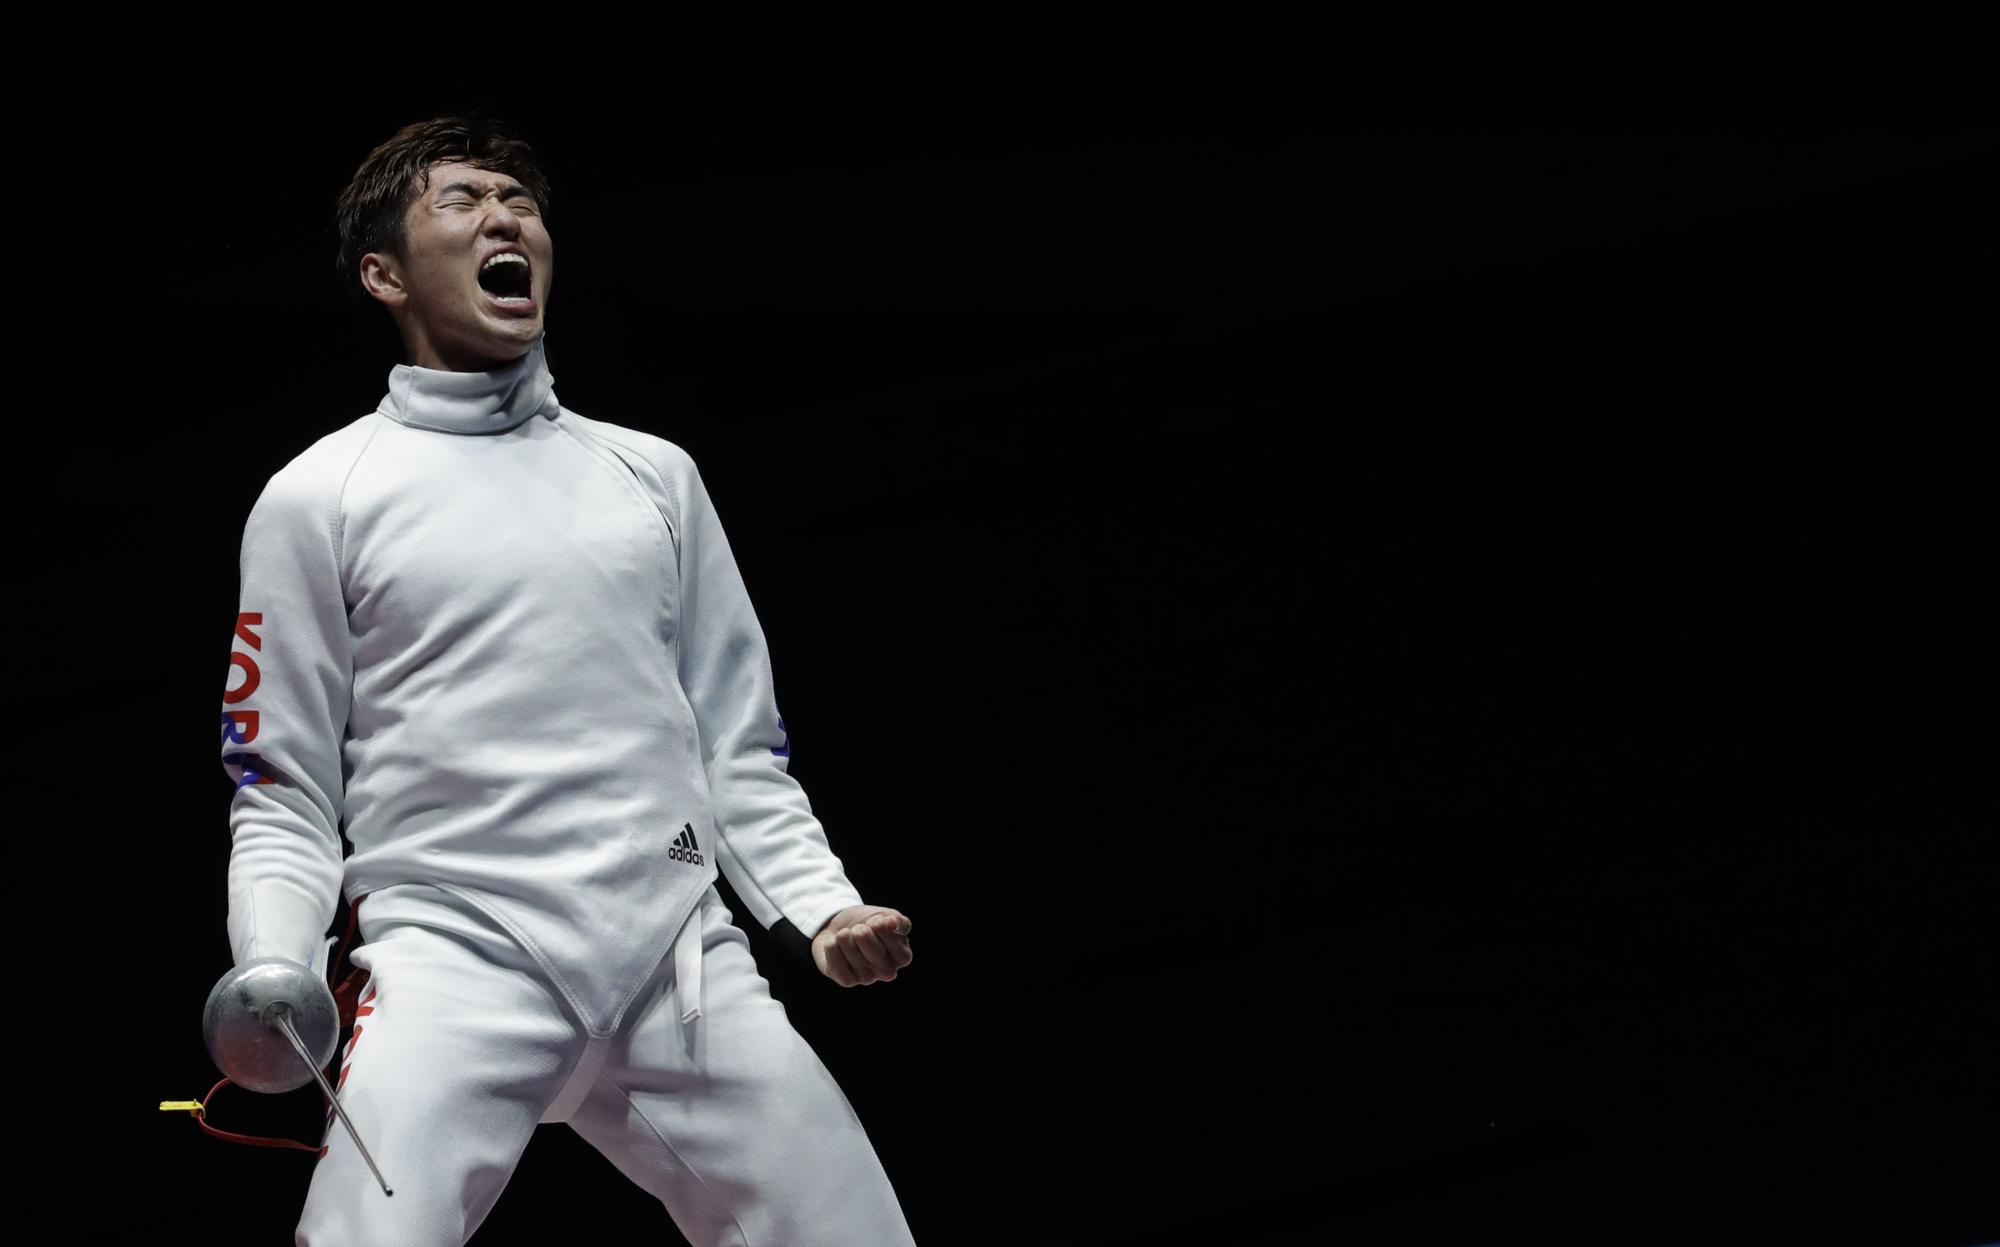 Park Sangyoung de Corea del Sur celebra luego de derrotar a Geze Imra de Hungría para ganar el oro en la final de espada individual masculina de las competiciones de esgrima.